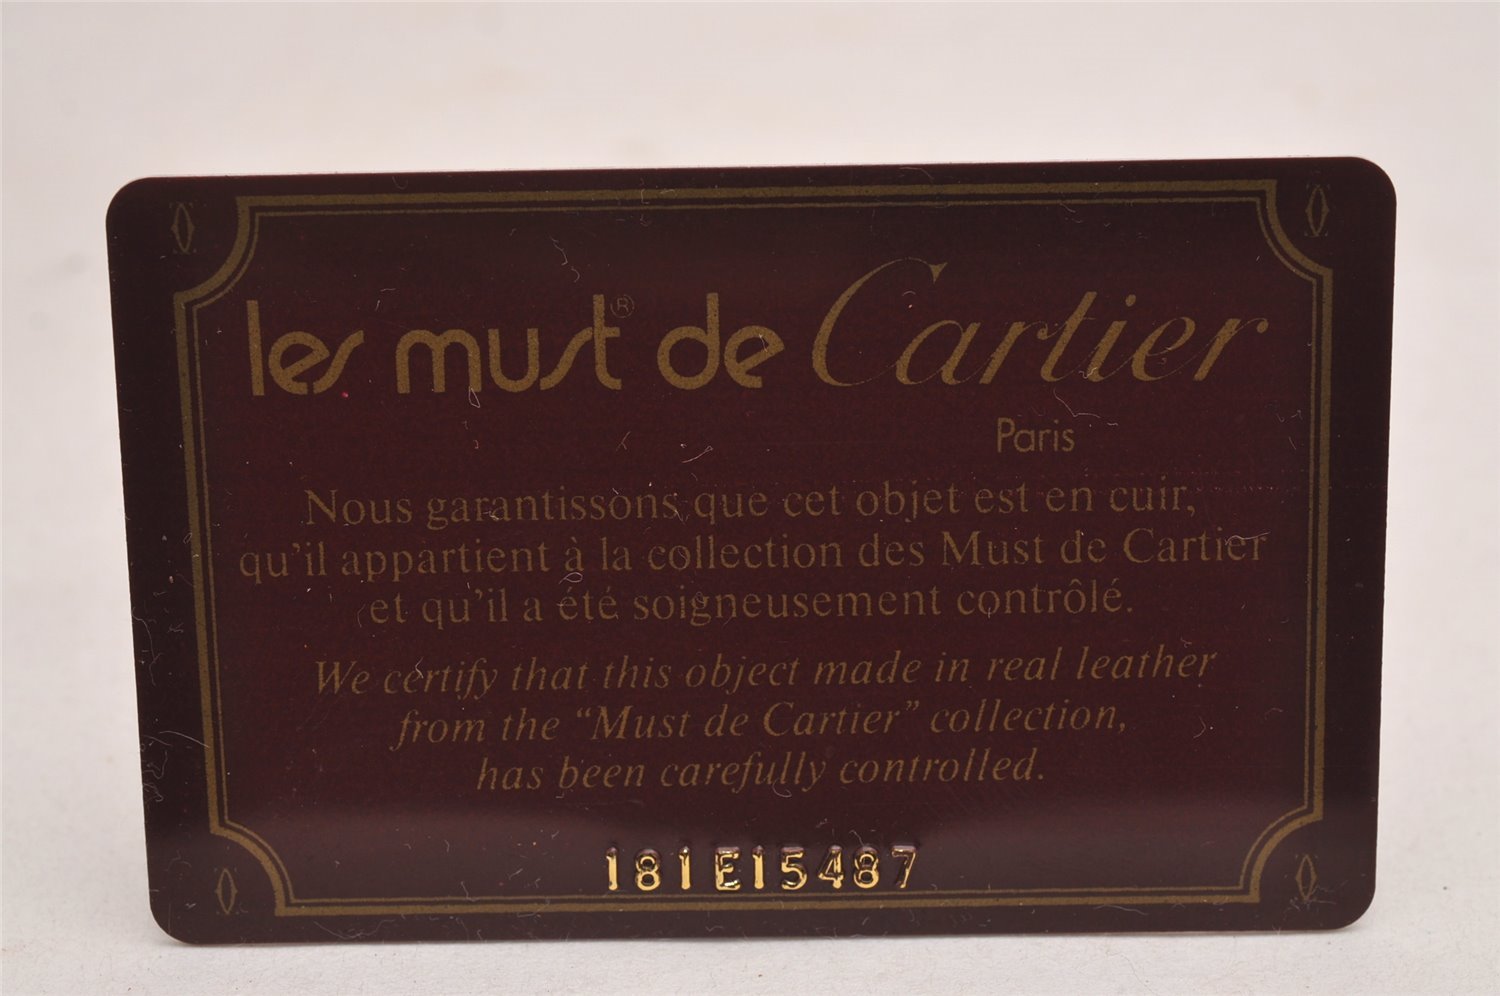 Authentic Cartier Must de Cartier Leather Shoulder Cross Bag Bordeaux Red 3044J